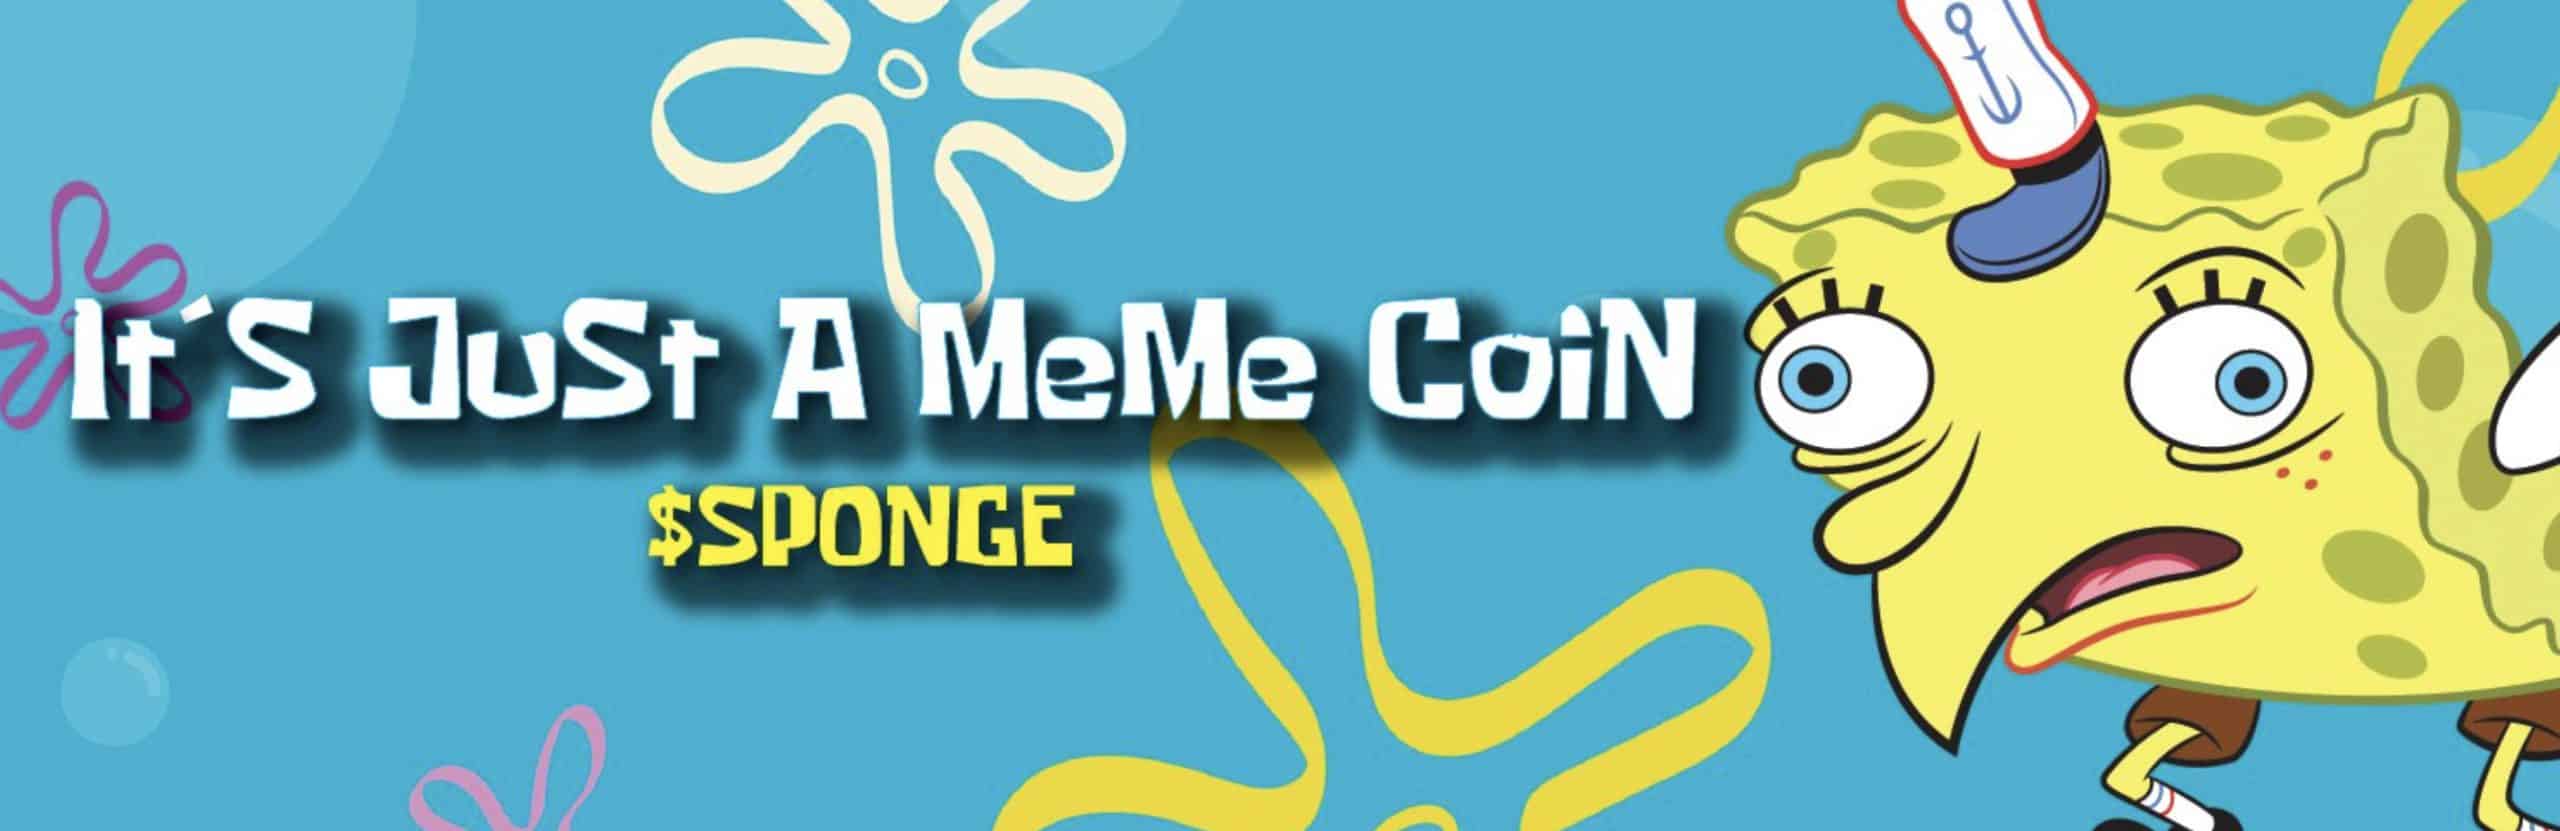 sponge meme